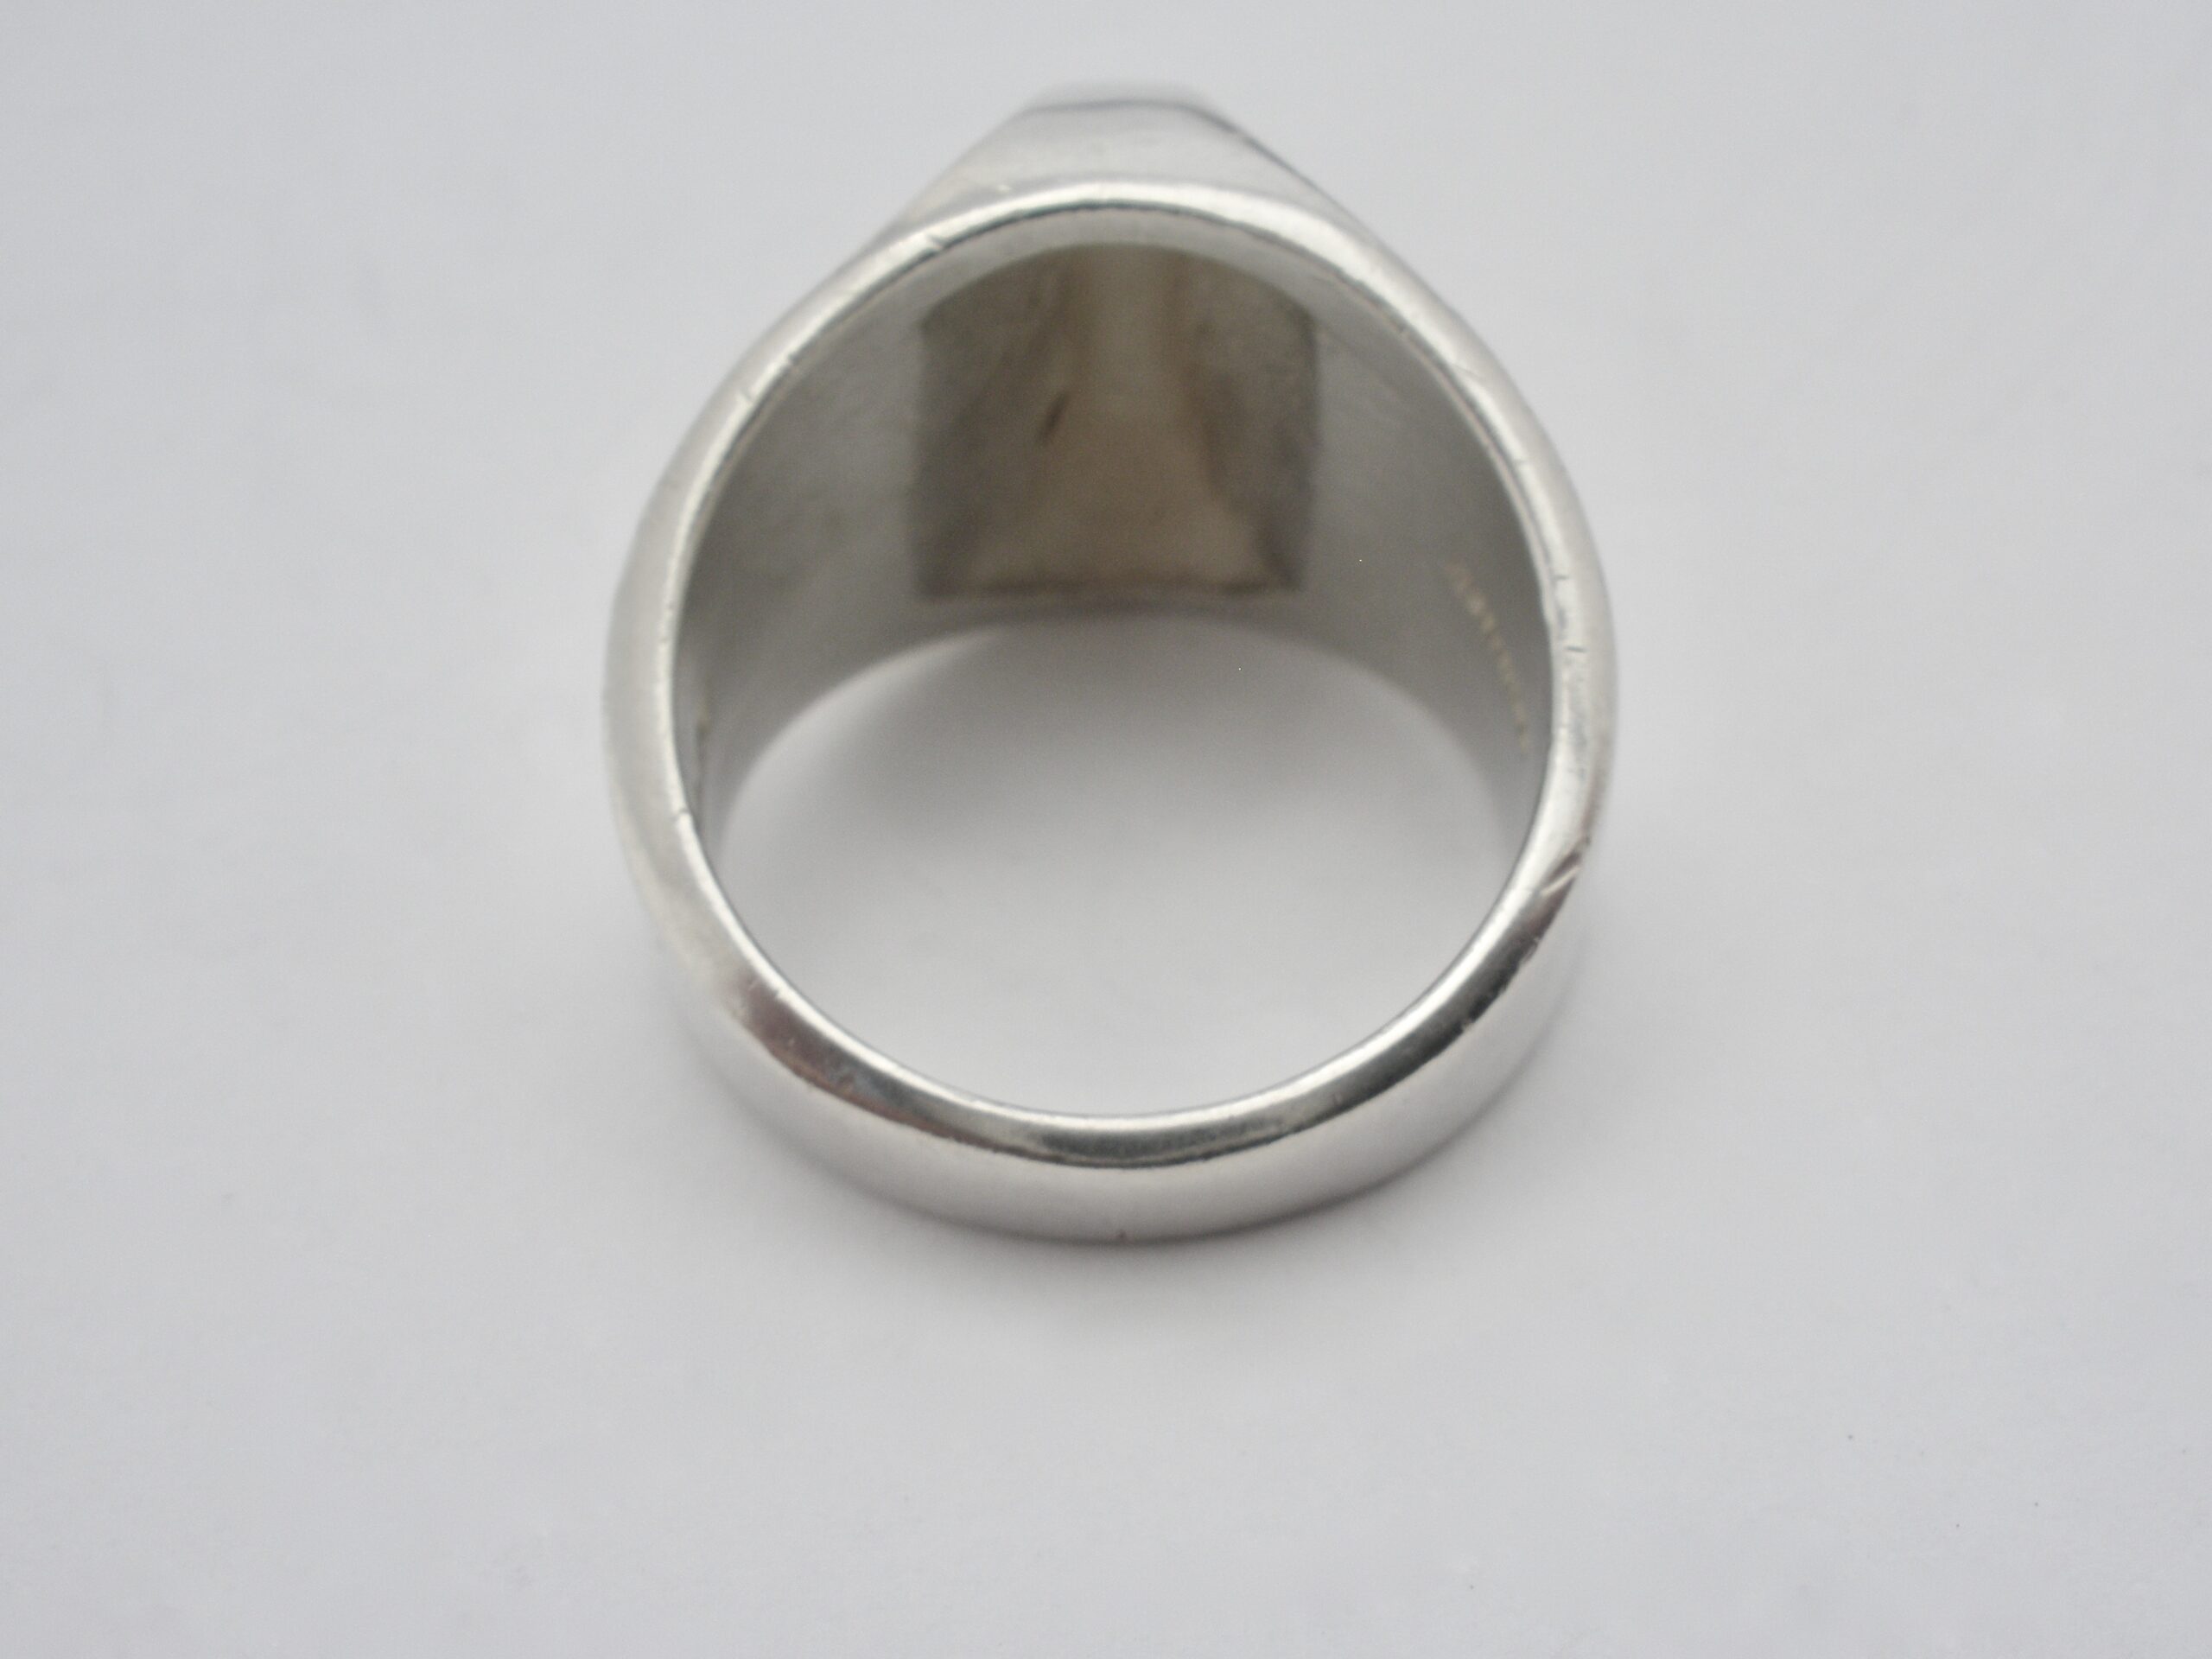 Arne Johansen, silver ring, Denmark, 1982 London import mark (Ref S+171 ...